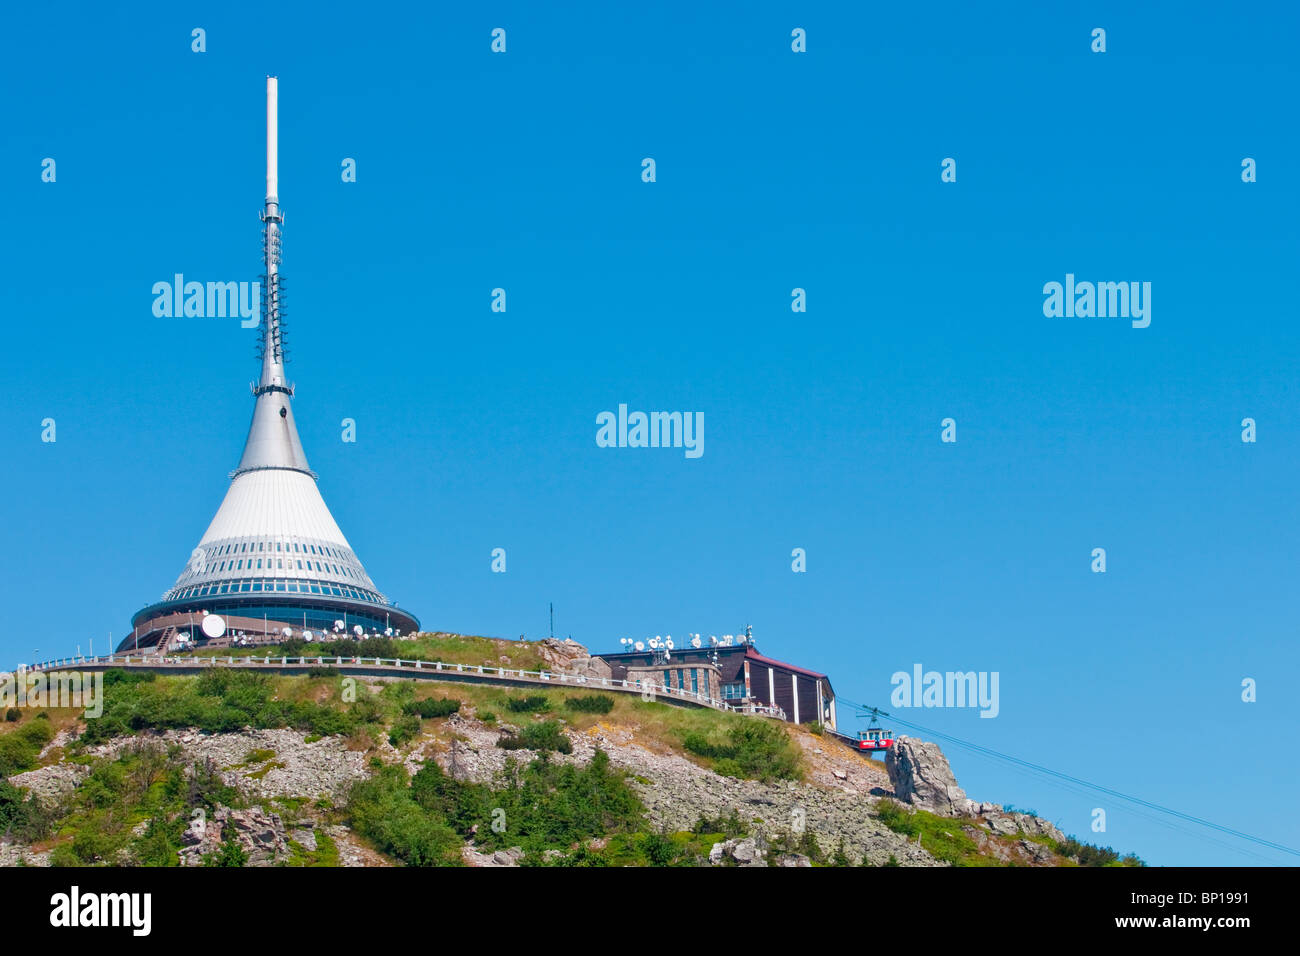 Repubblica Ceca Liberec - 1012 metri di altezza della torre della TV e hotel - architetto hubacek Foto Stock